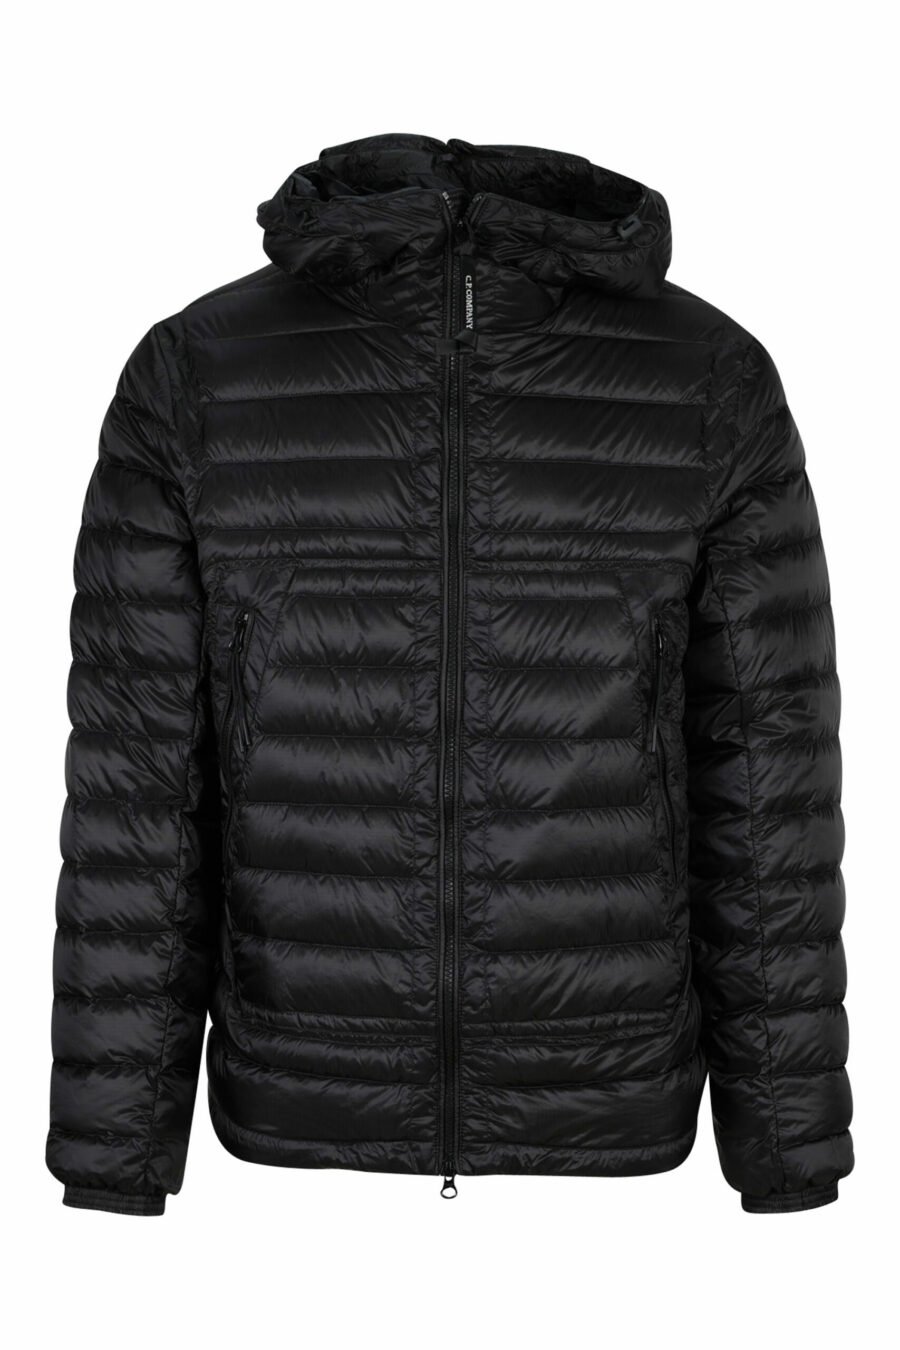 Black hooded jacket with goggle logo - 7620943629262 scaled